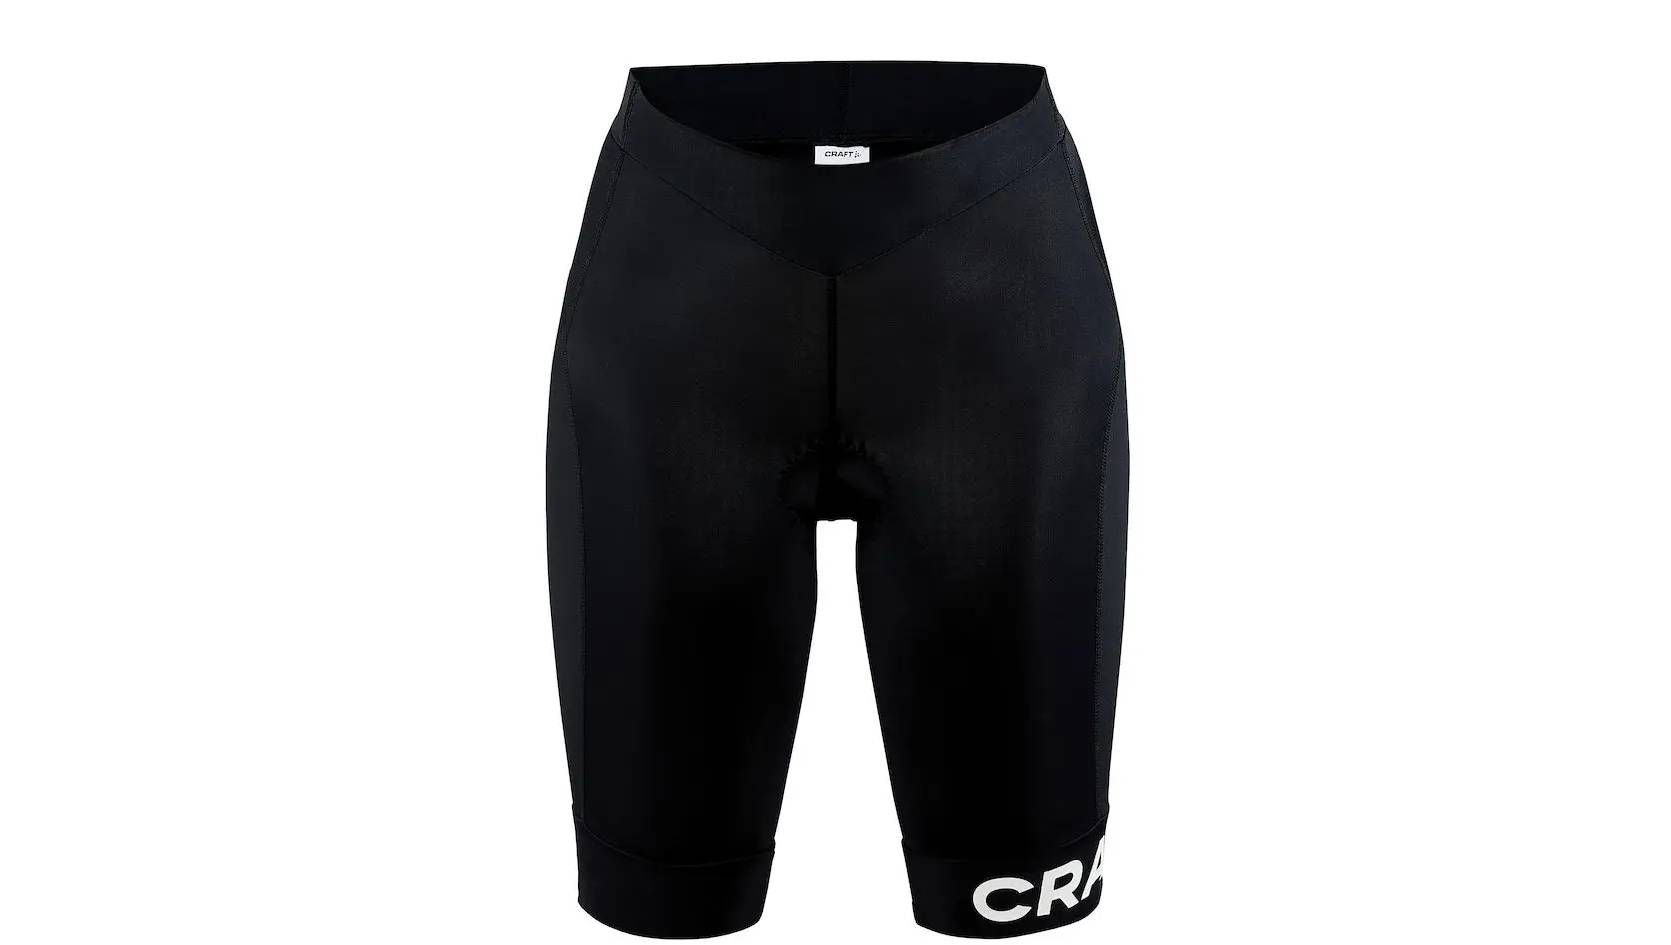 Фотография Велошорты Craft Core Endur Shorts женские, размер XS, сезон SS 21, черно-белый